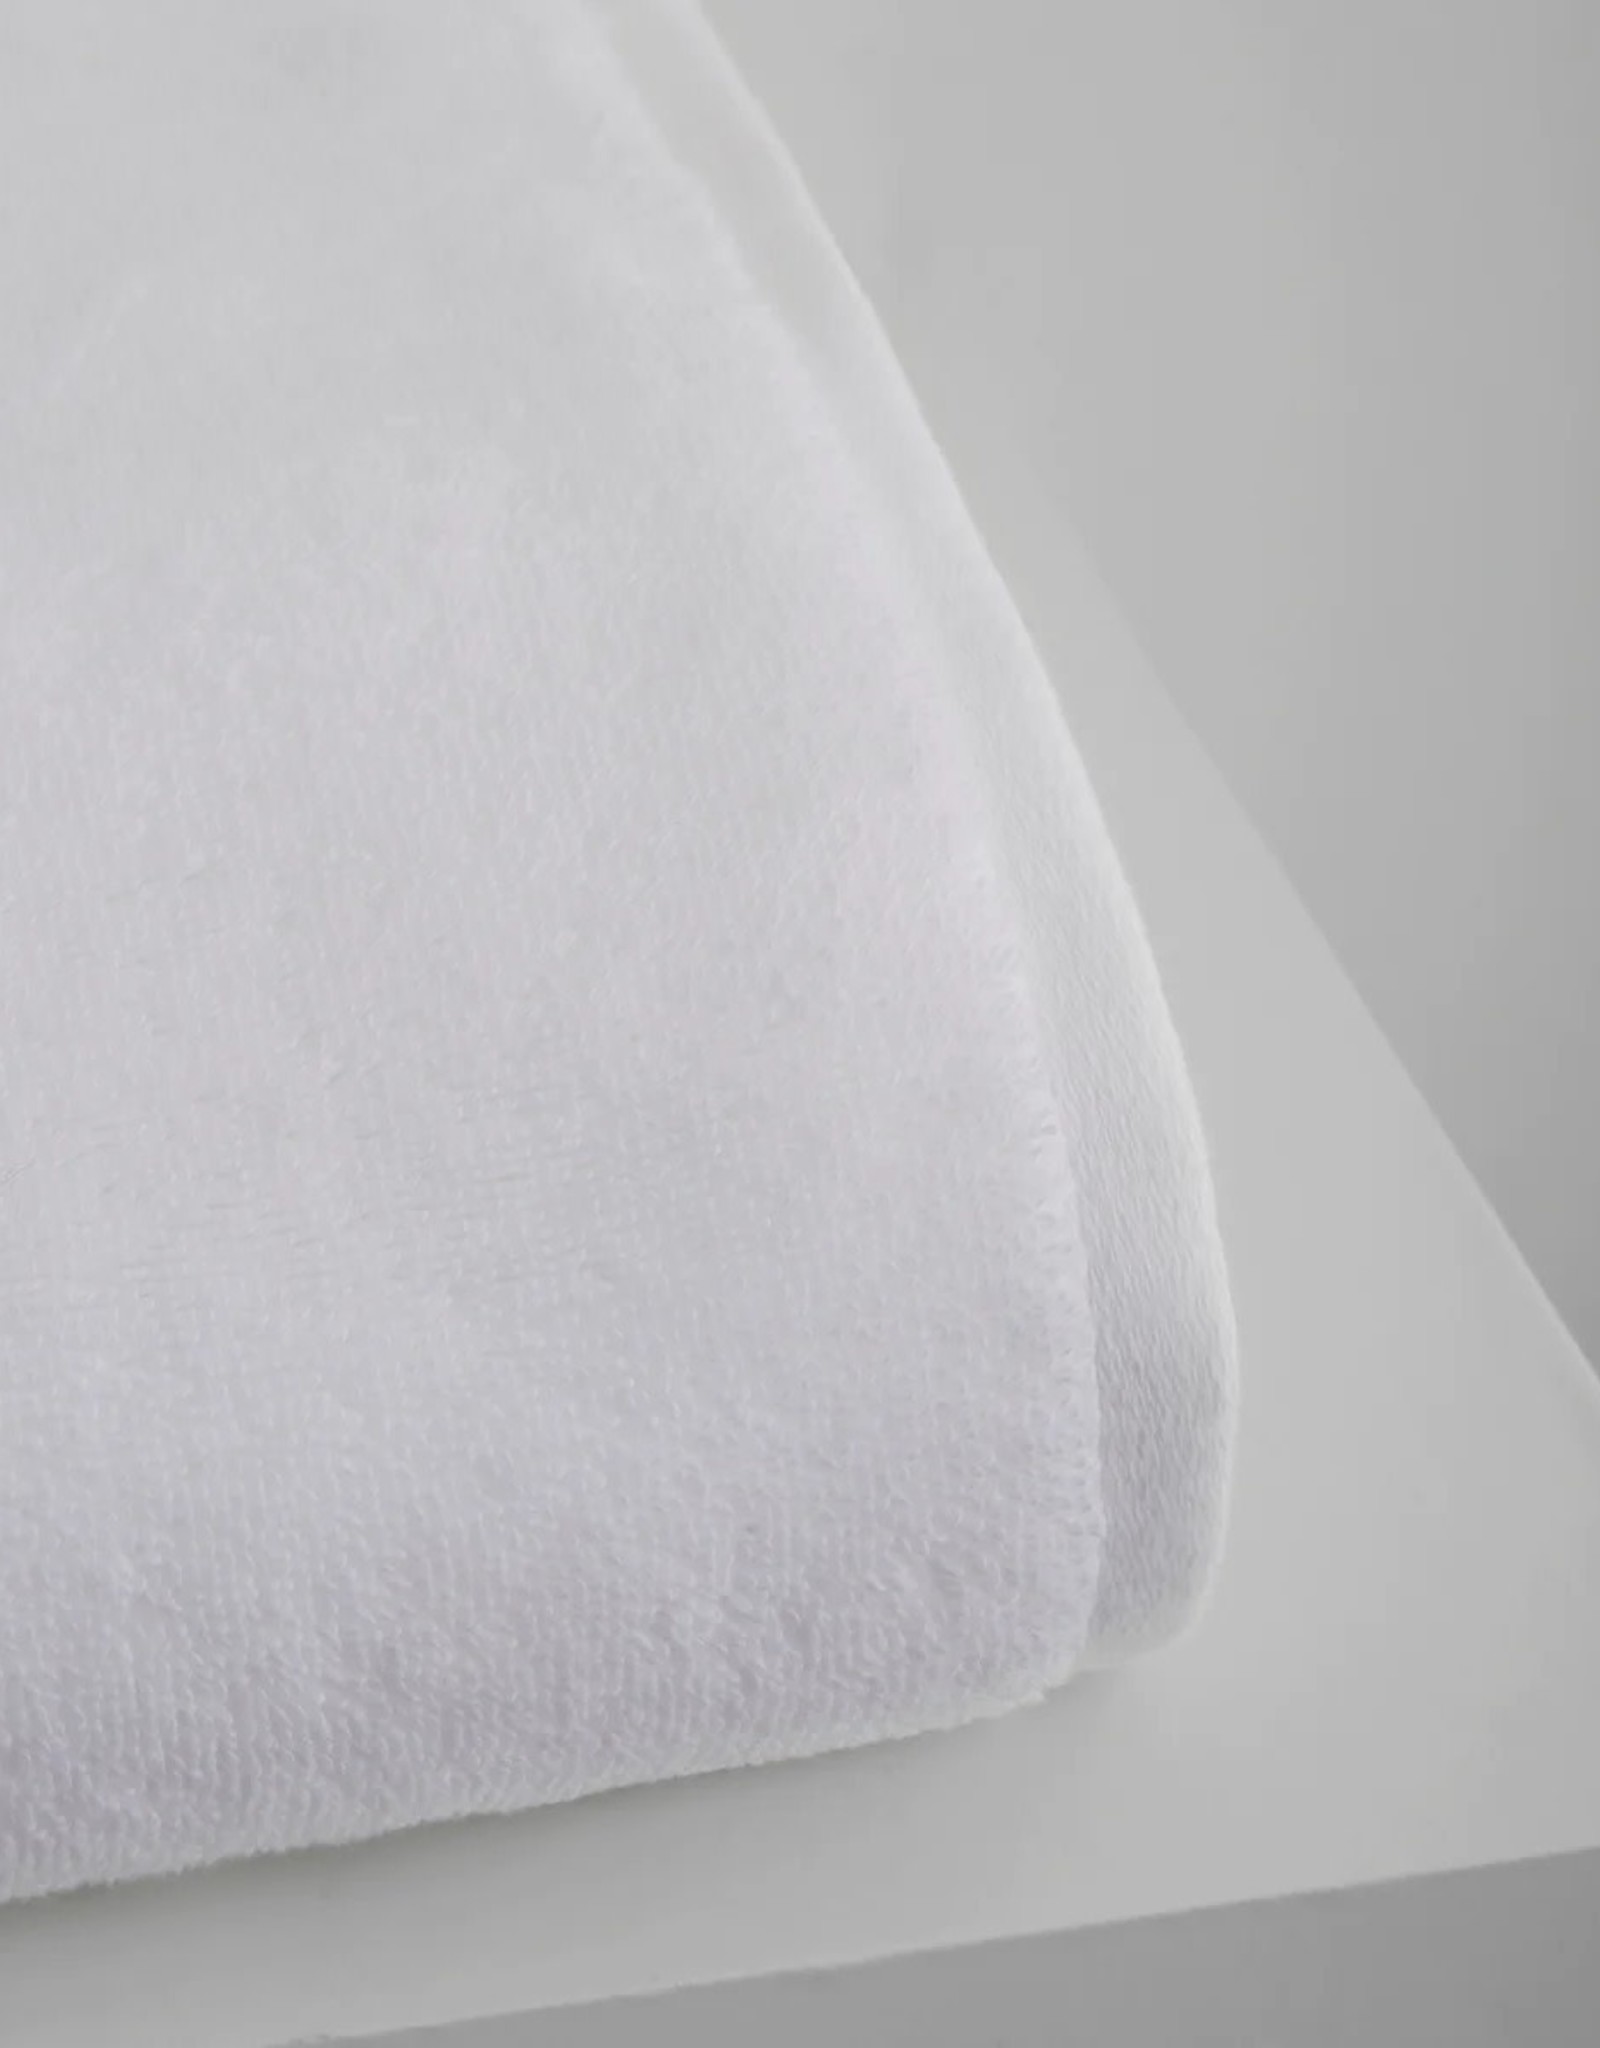 Adaste Home Inc Soft Touch Bath Towel, White